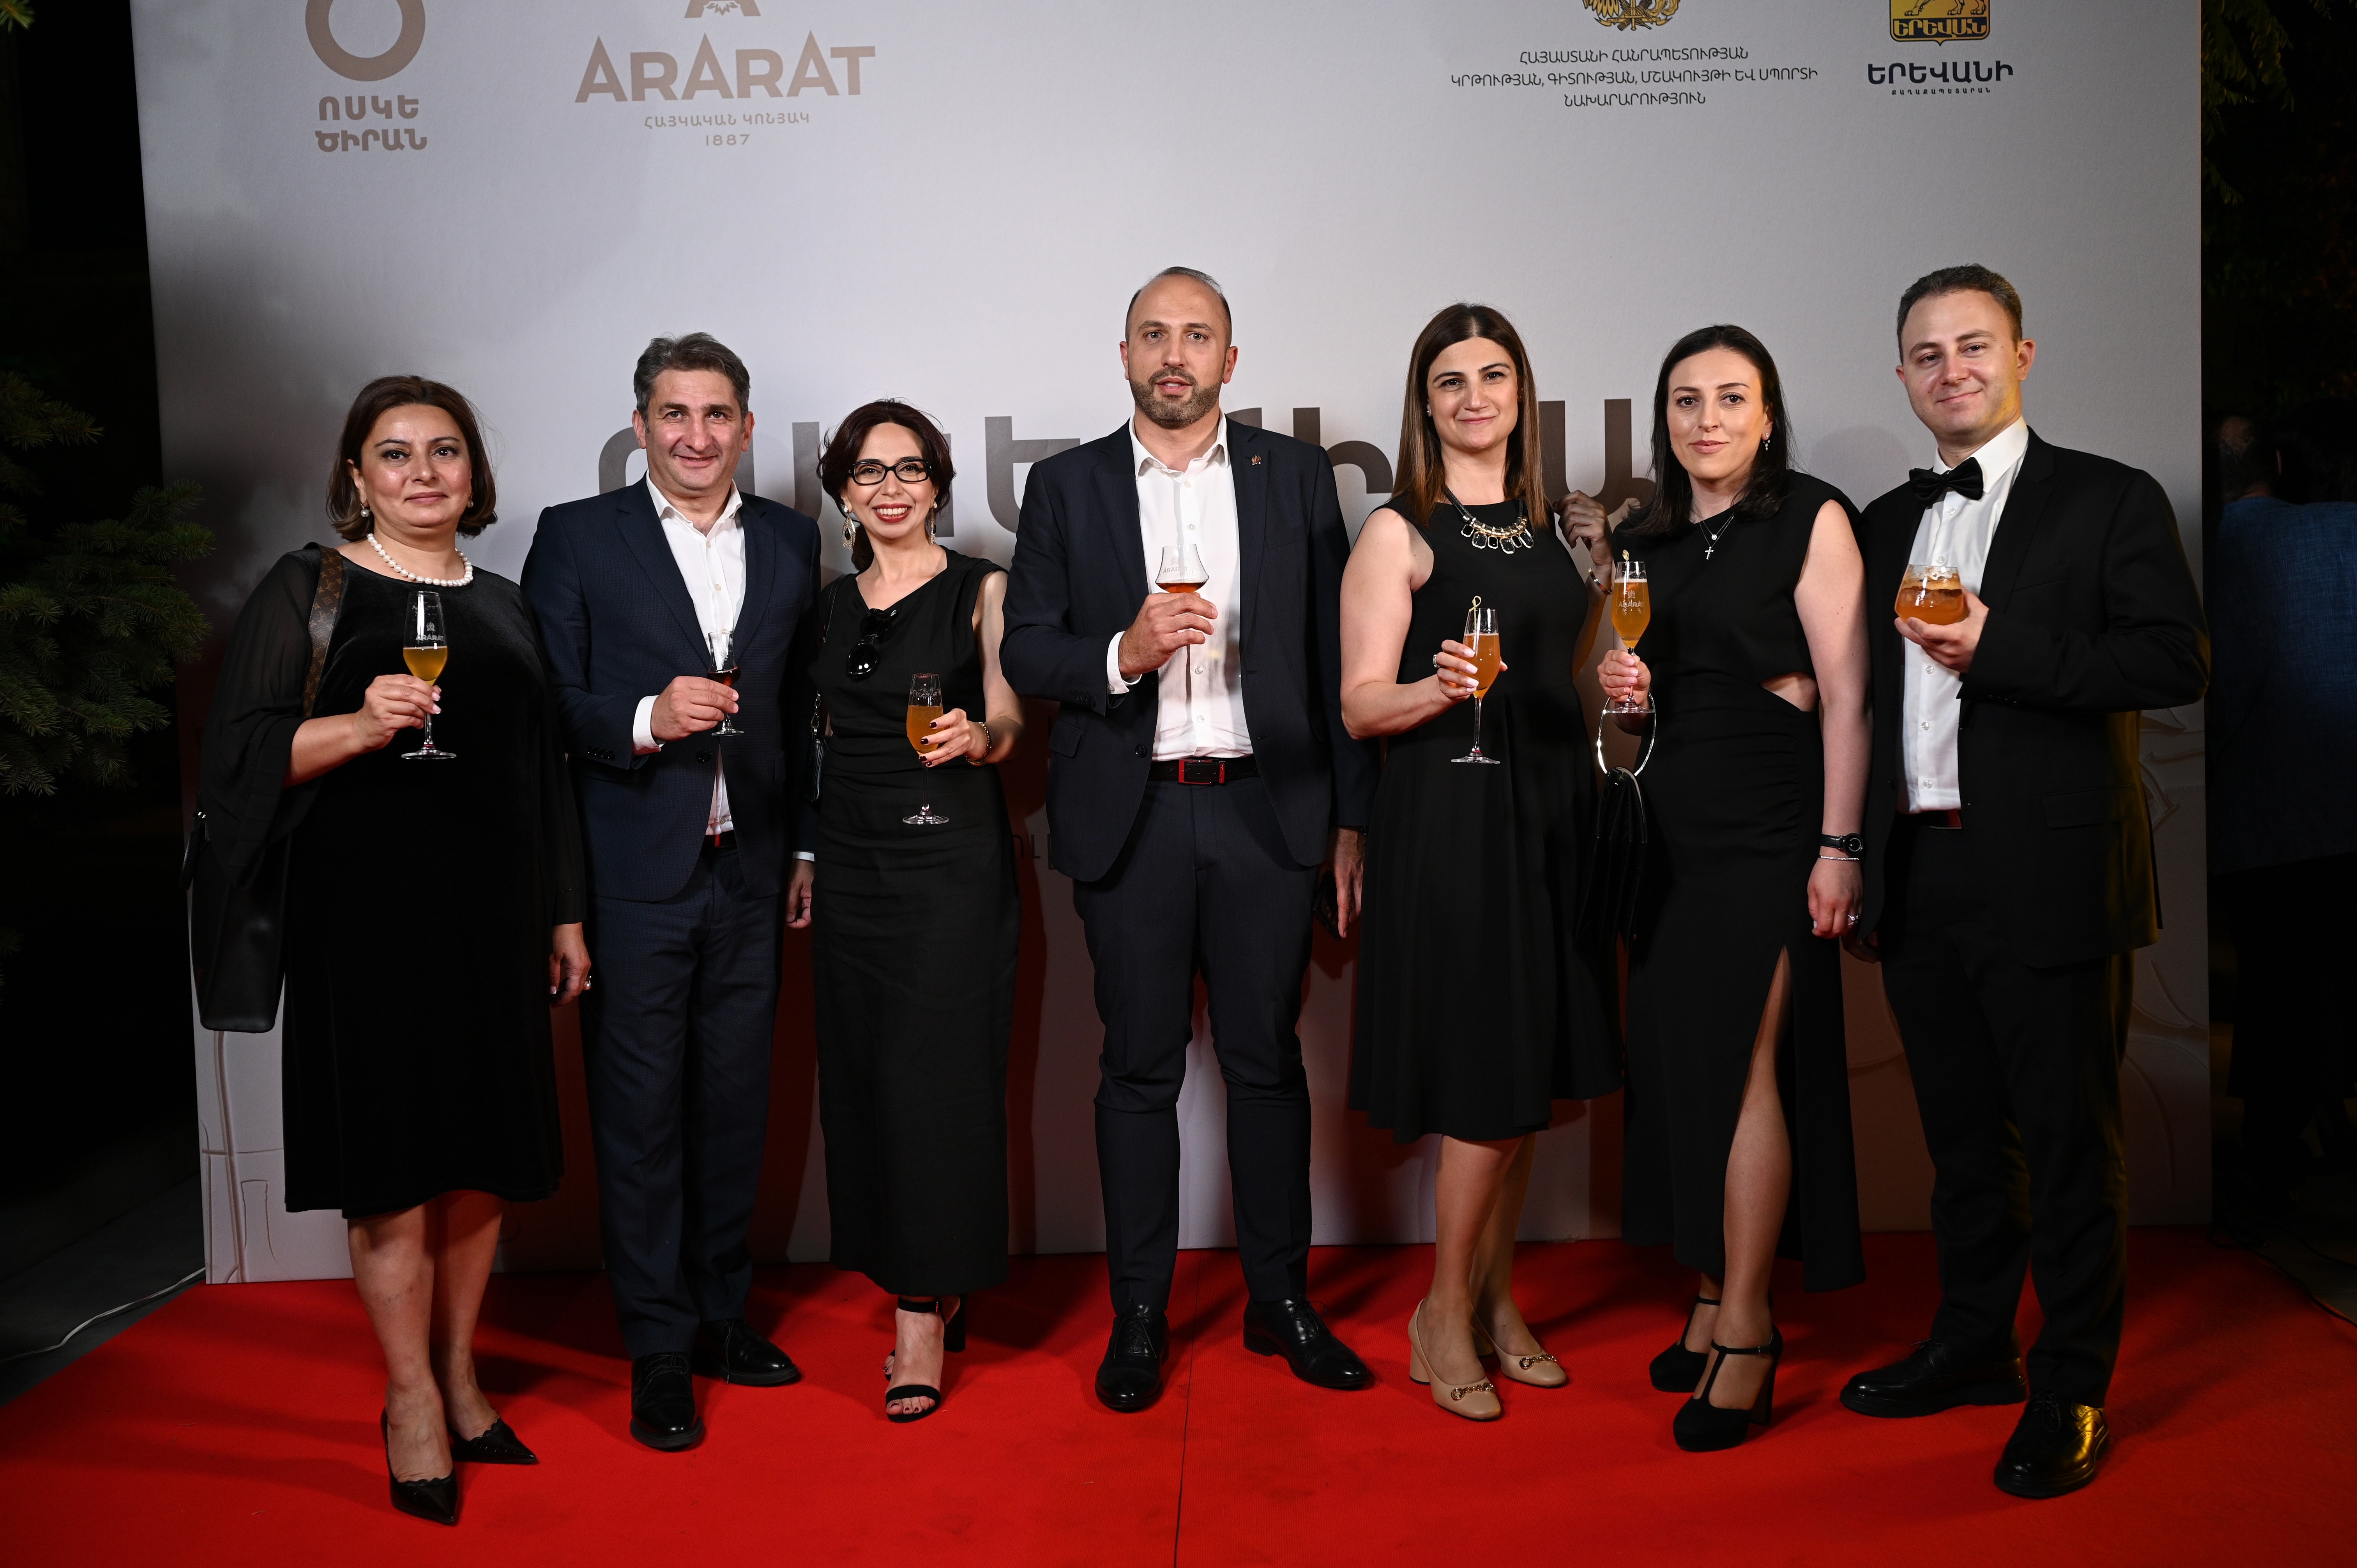 Երեւանի «Ոսկե ծիրան»  20-րդ միջազգային կինոփառատոնի բացման հանդիսավոր արարողությունը՝ ARARAT հայկական կոնյակների աջակցությամբ